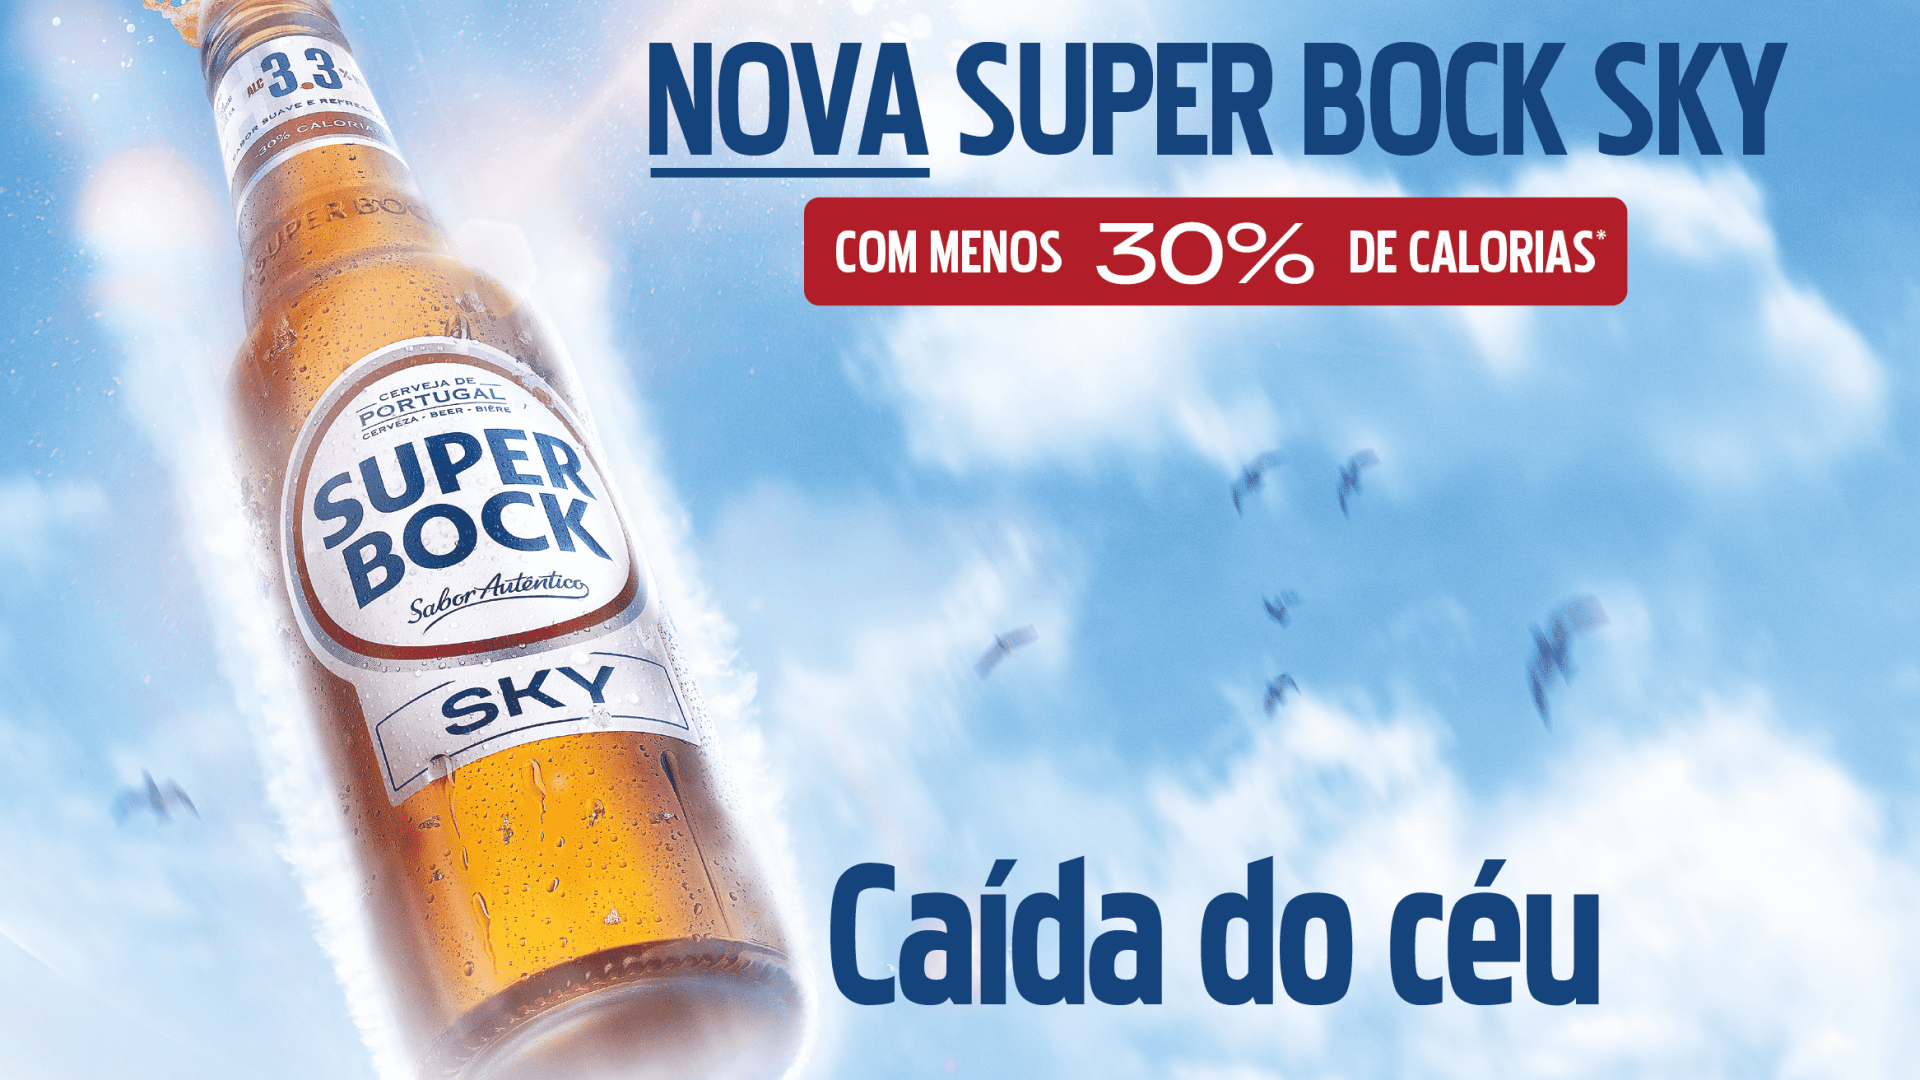 Super Bock Sky - Caída do Céu